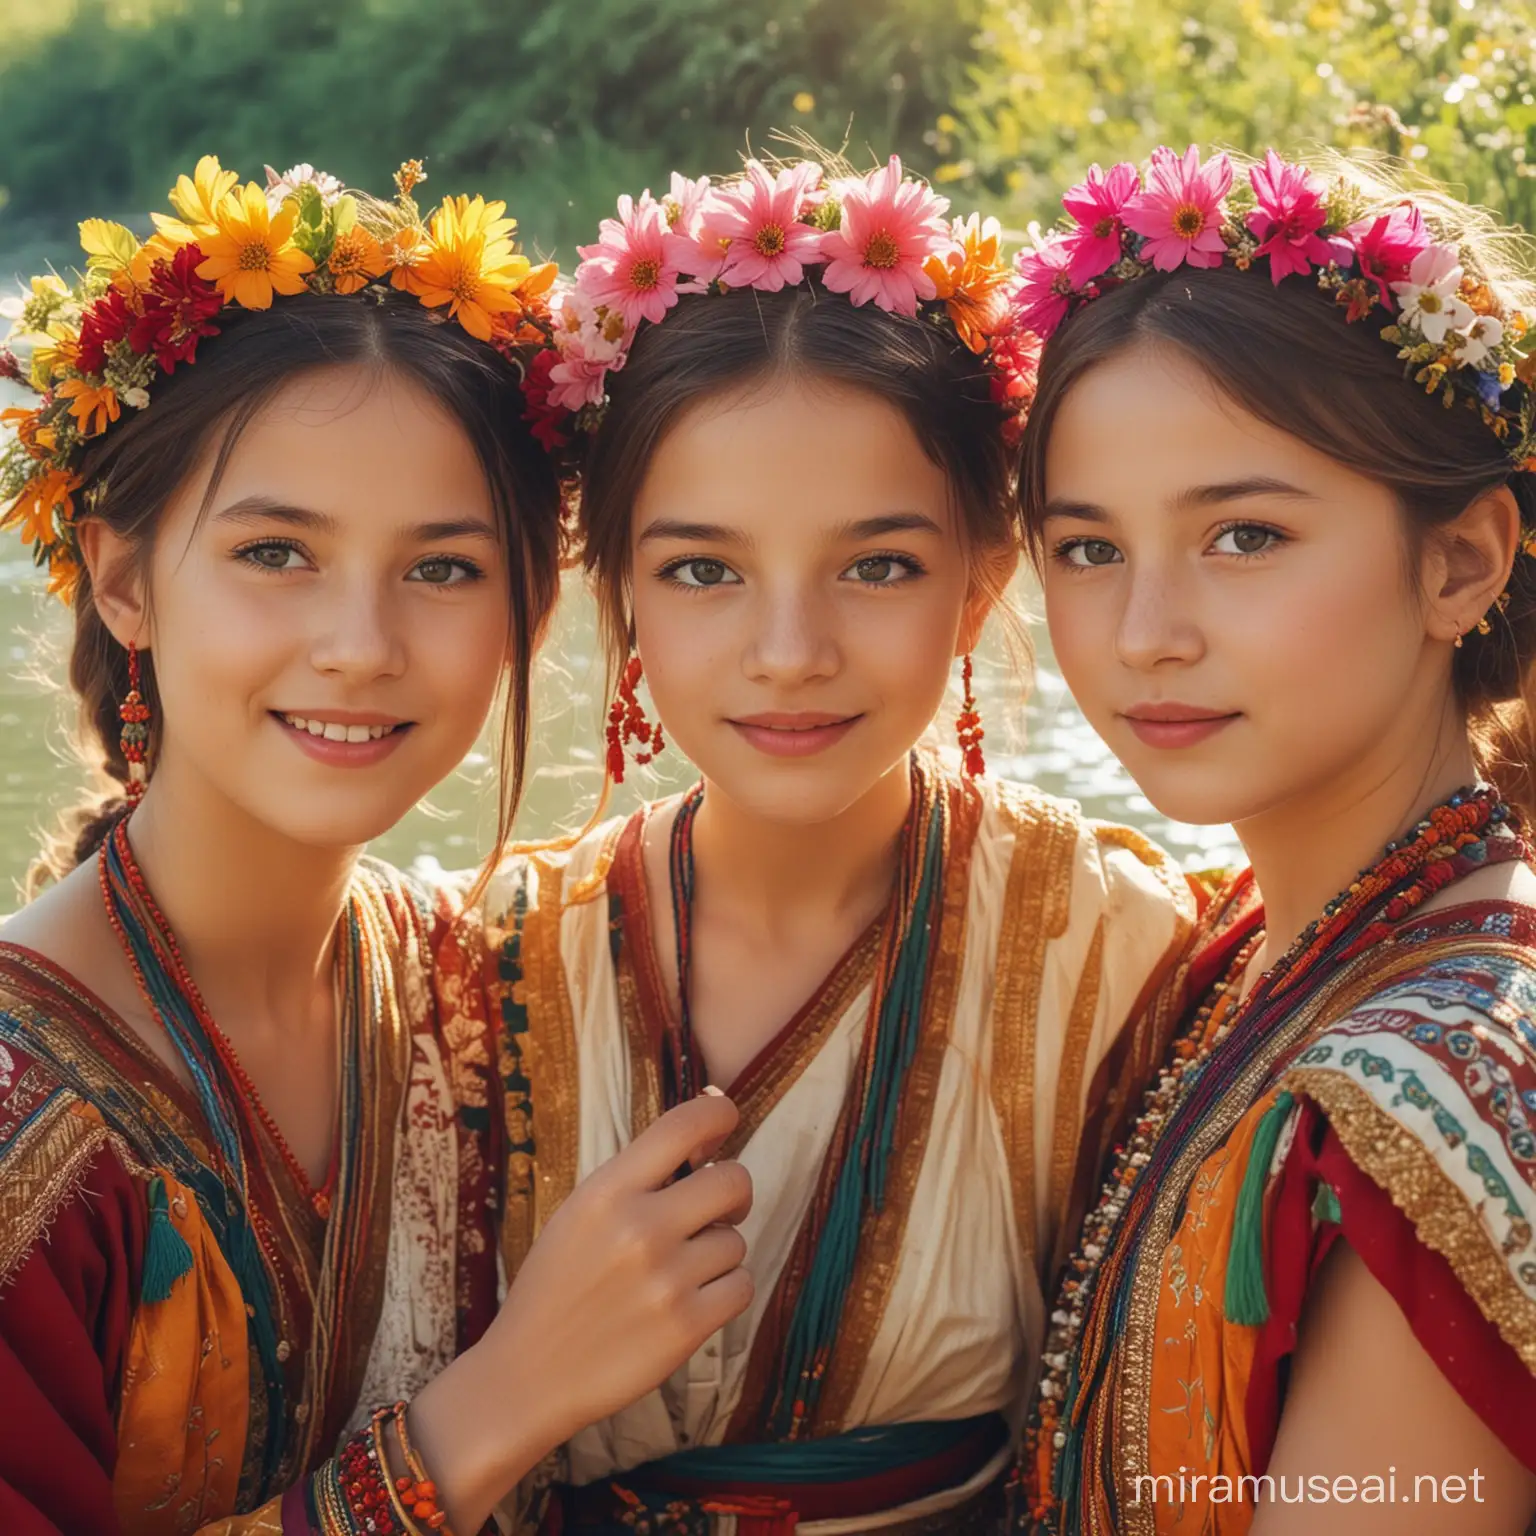 三个可爱女生  古装 彩色 鲜明 面部特写  沿河边的花丛转身 背景阳光 耀眼